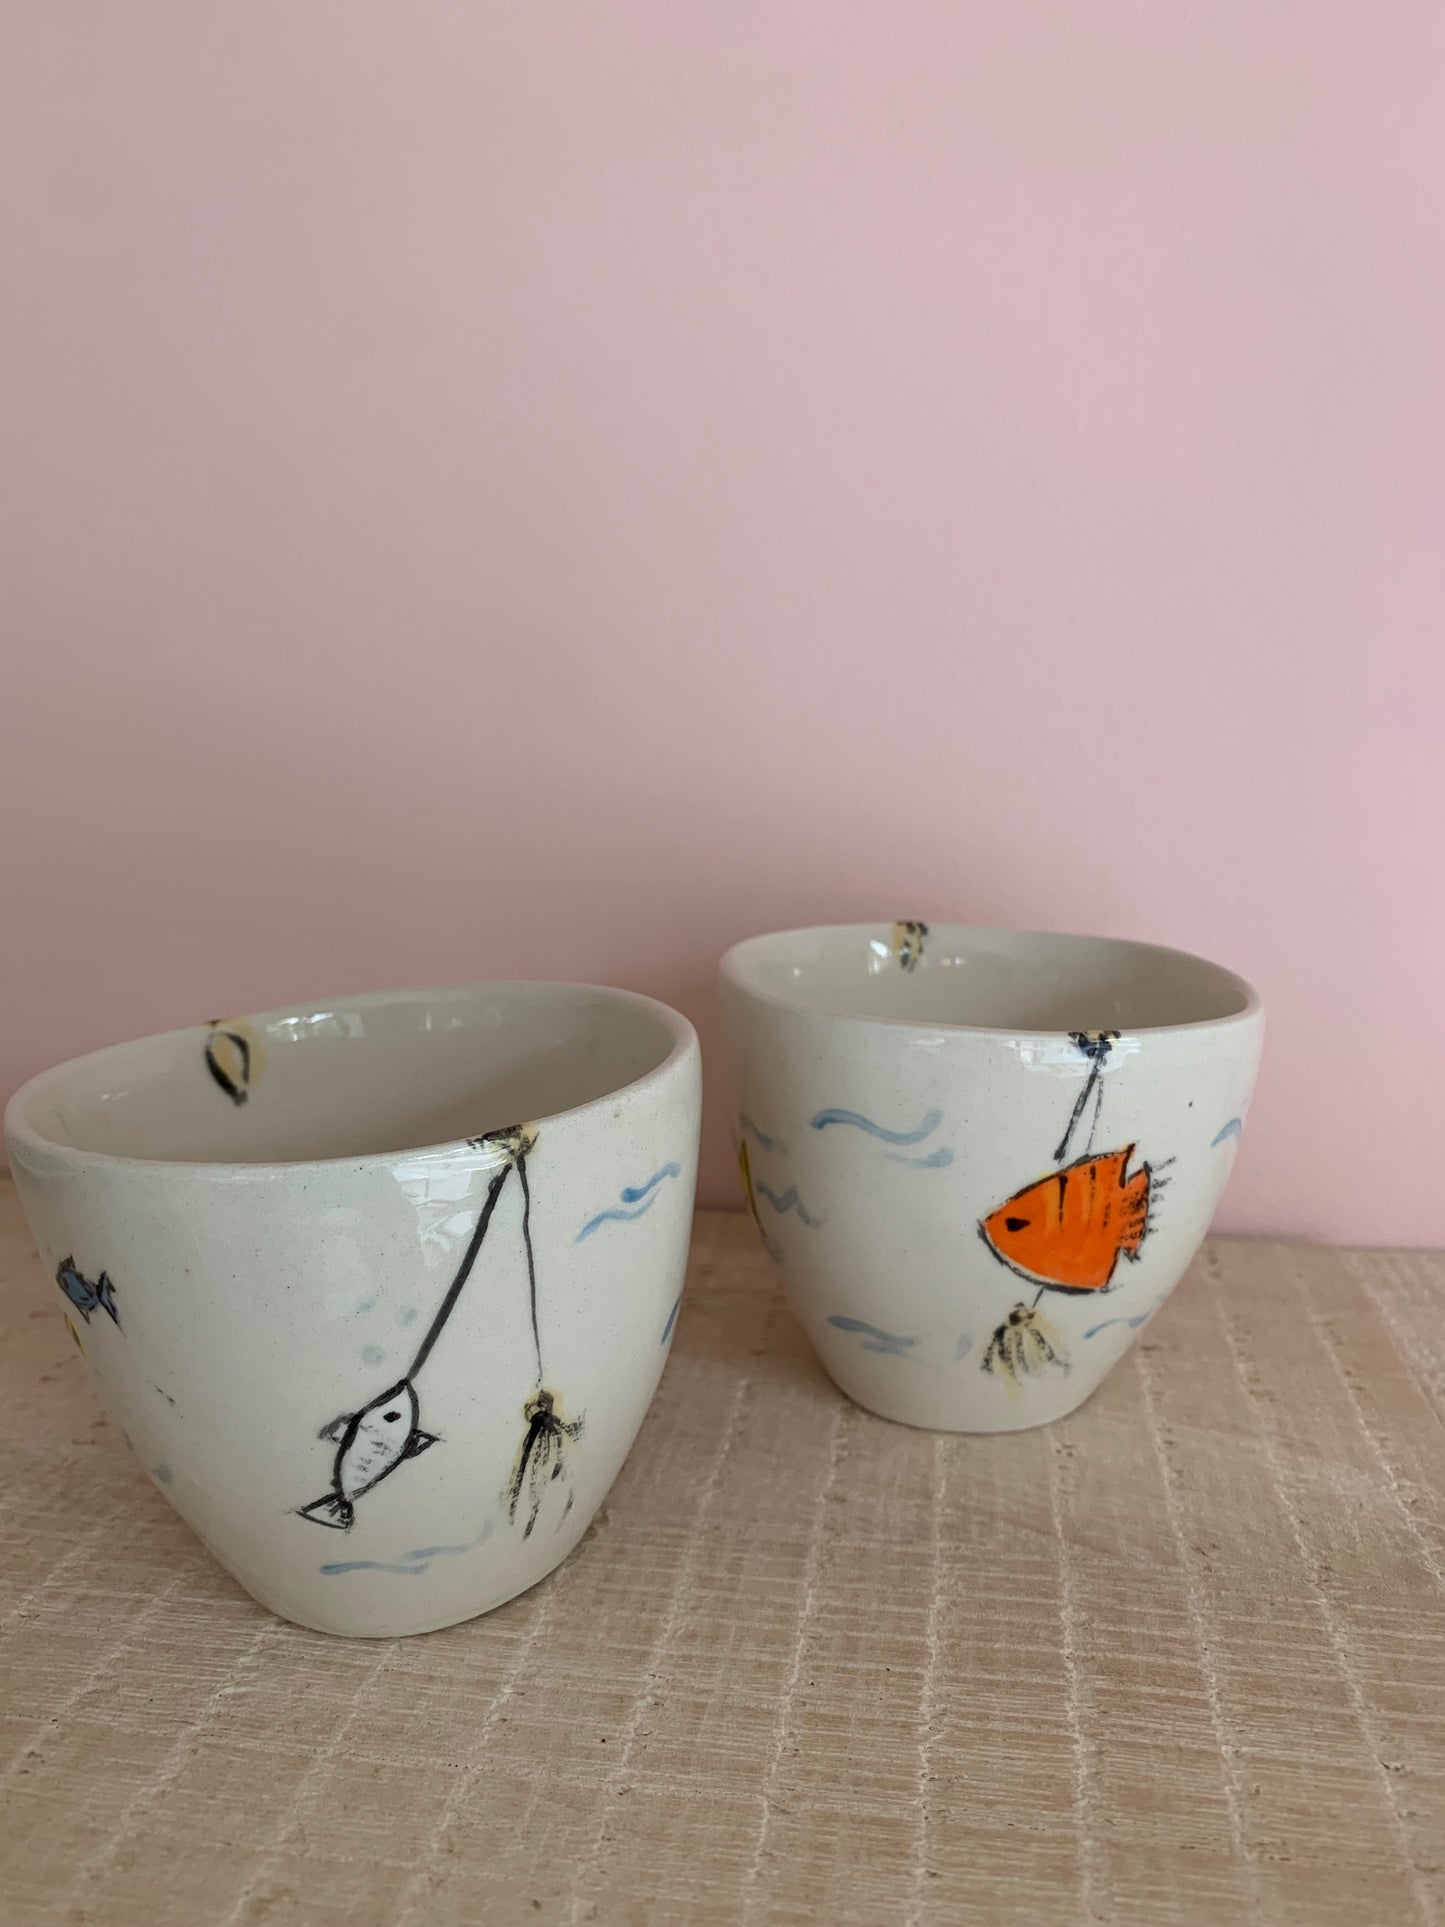 Teambuilding paint your pottery (enkel op afspraak via mail)